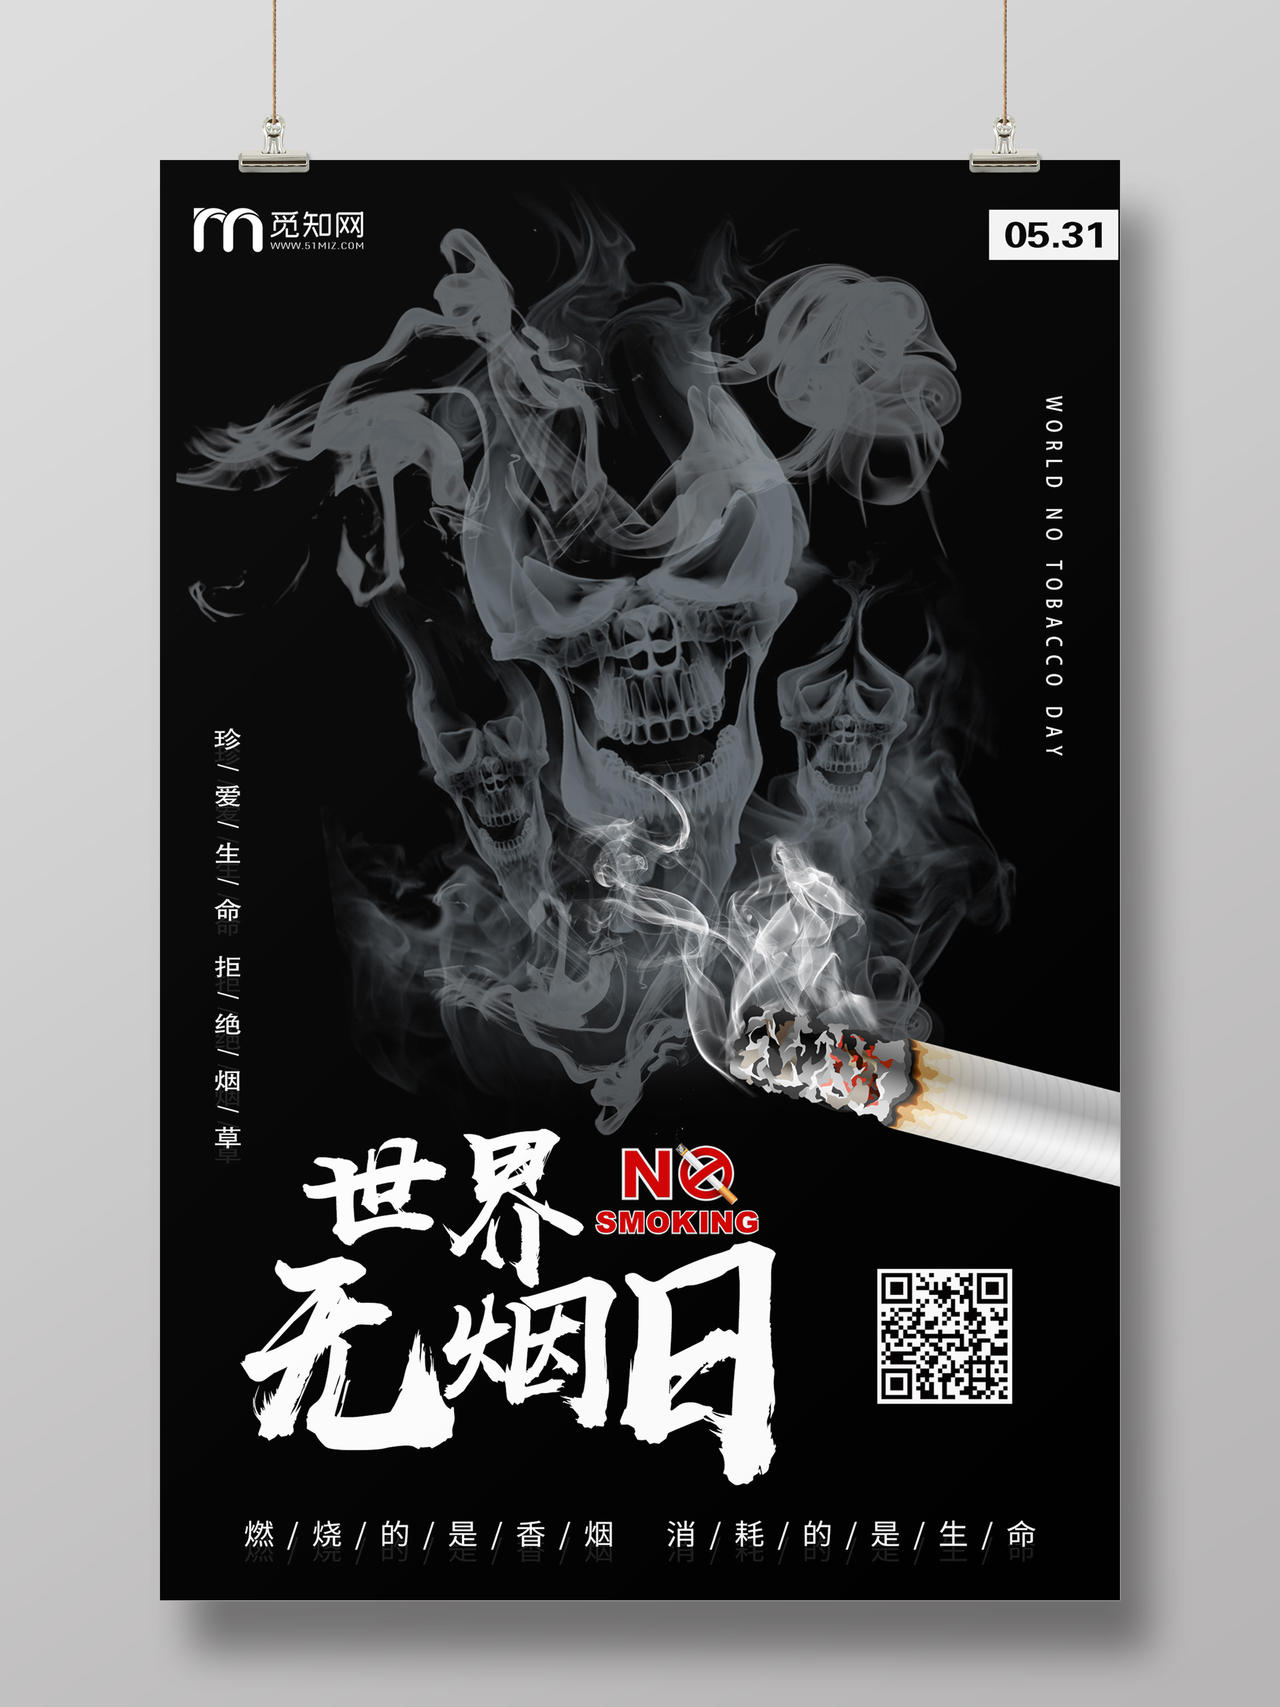 简单大气黑色世界无烟日禁烟公益宣传海报